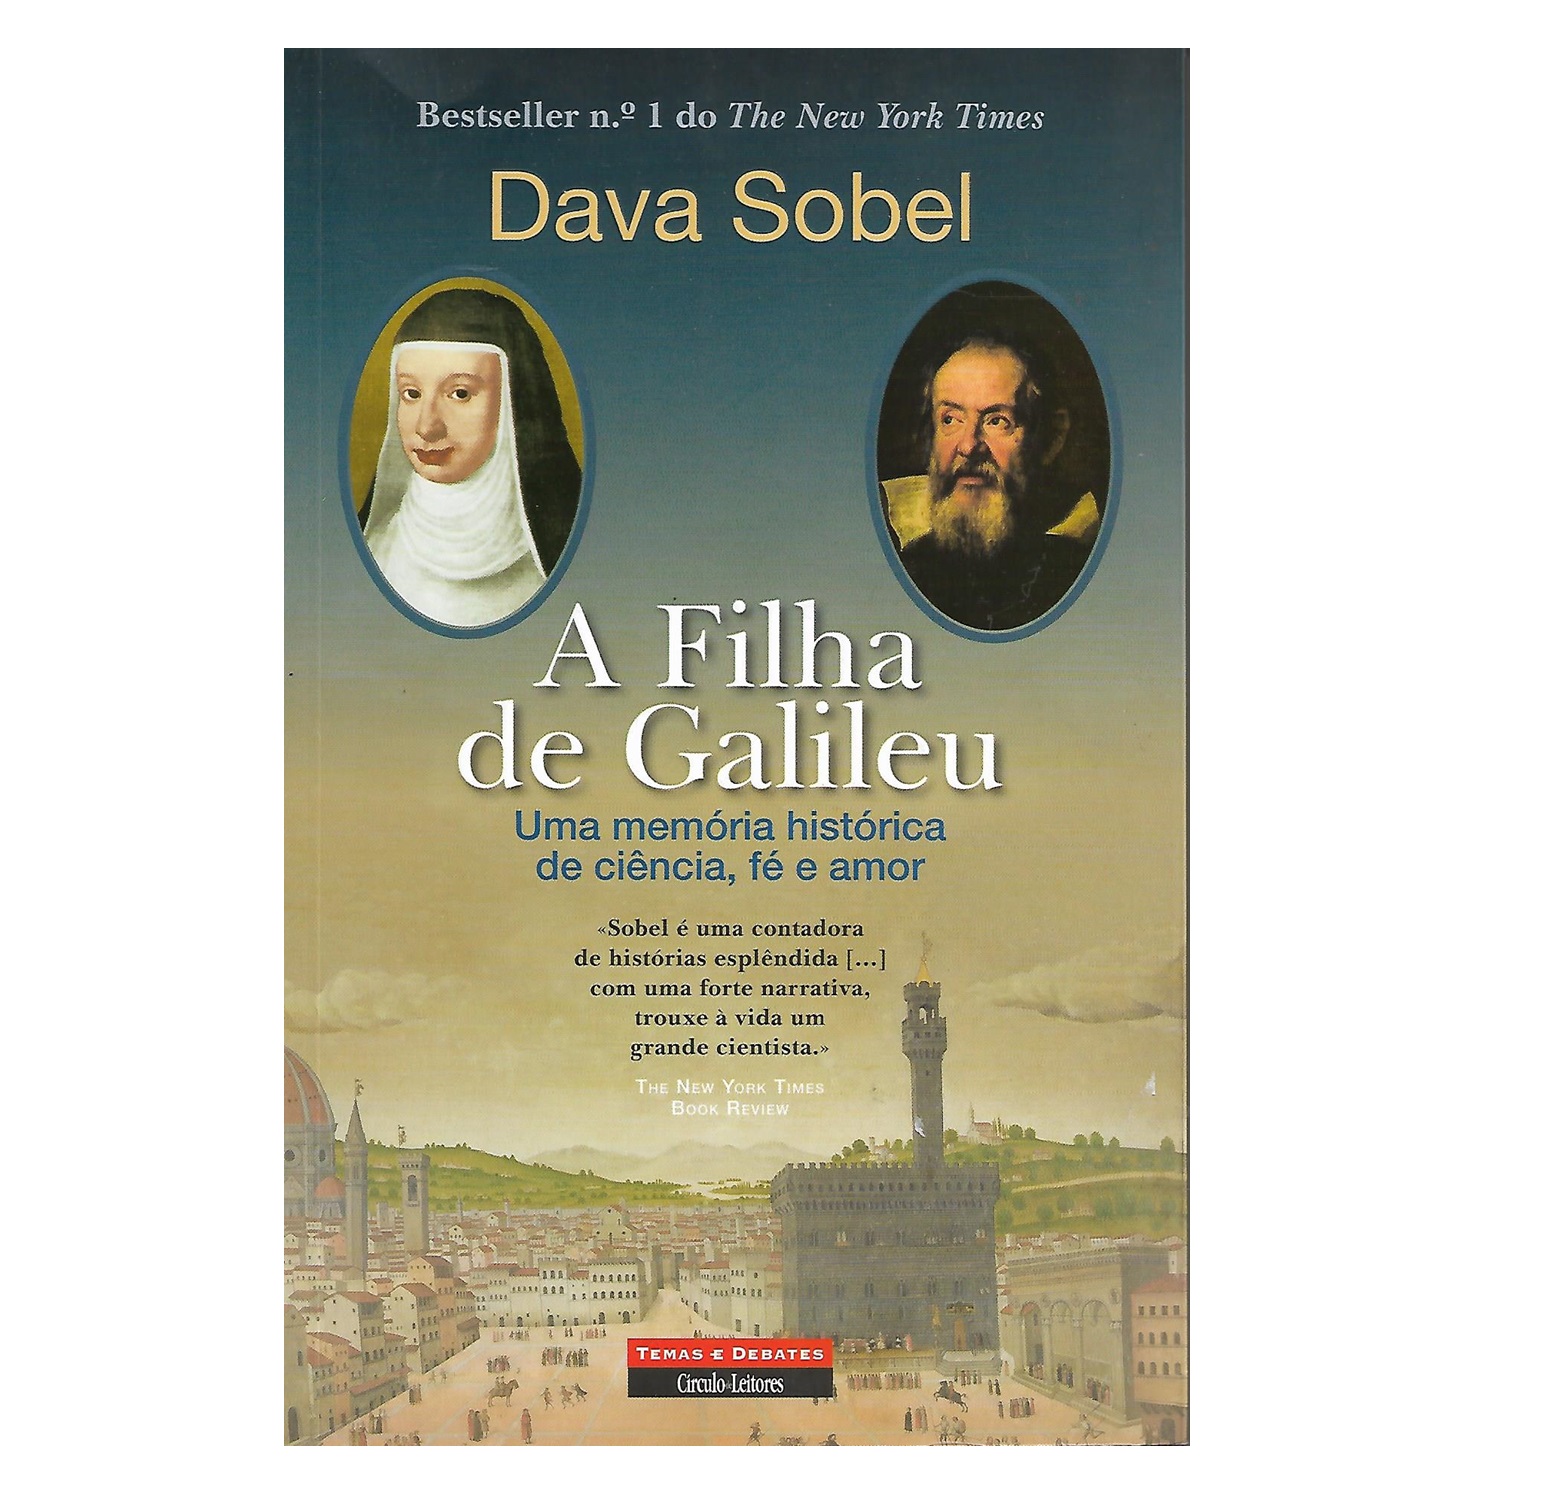 A FILHA DE GALILEU: UMA MEMÓRIA HISTÓRICA DE CIÊNCIA, FÉ E AMOR